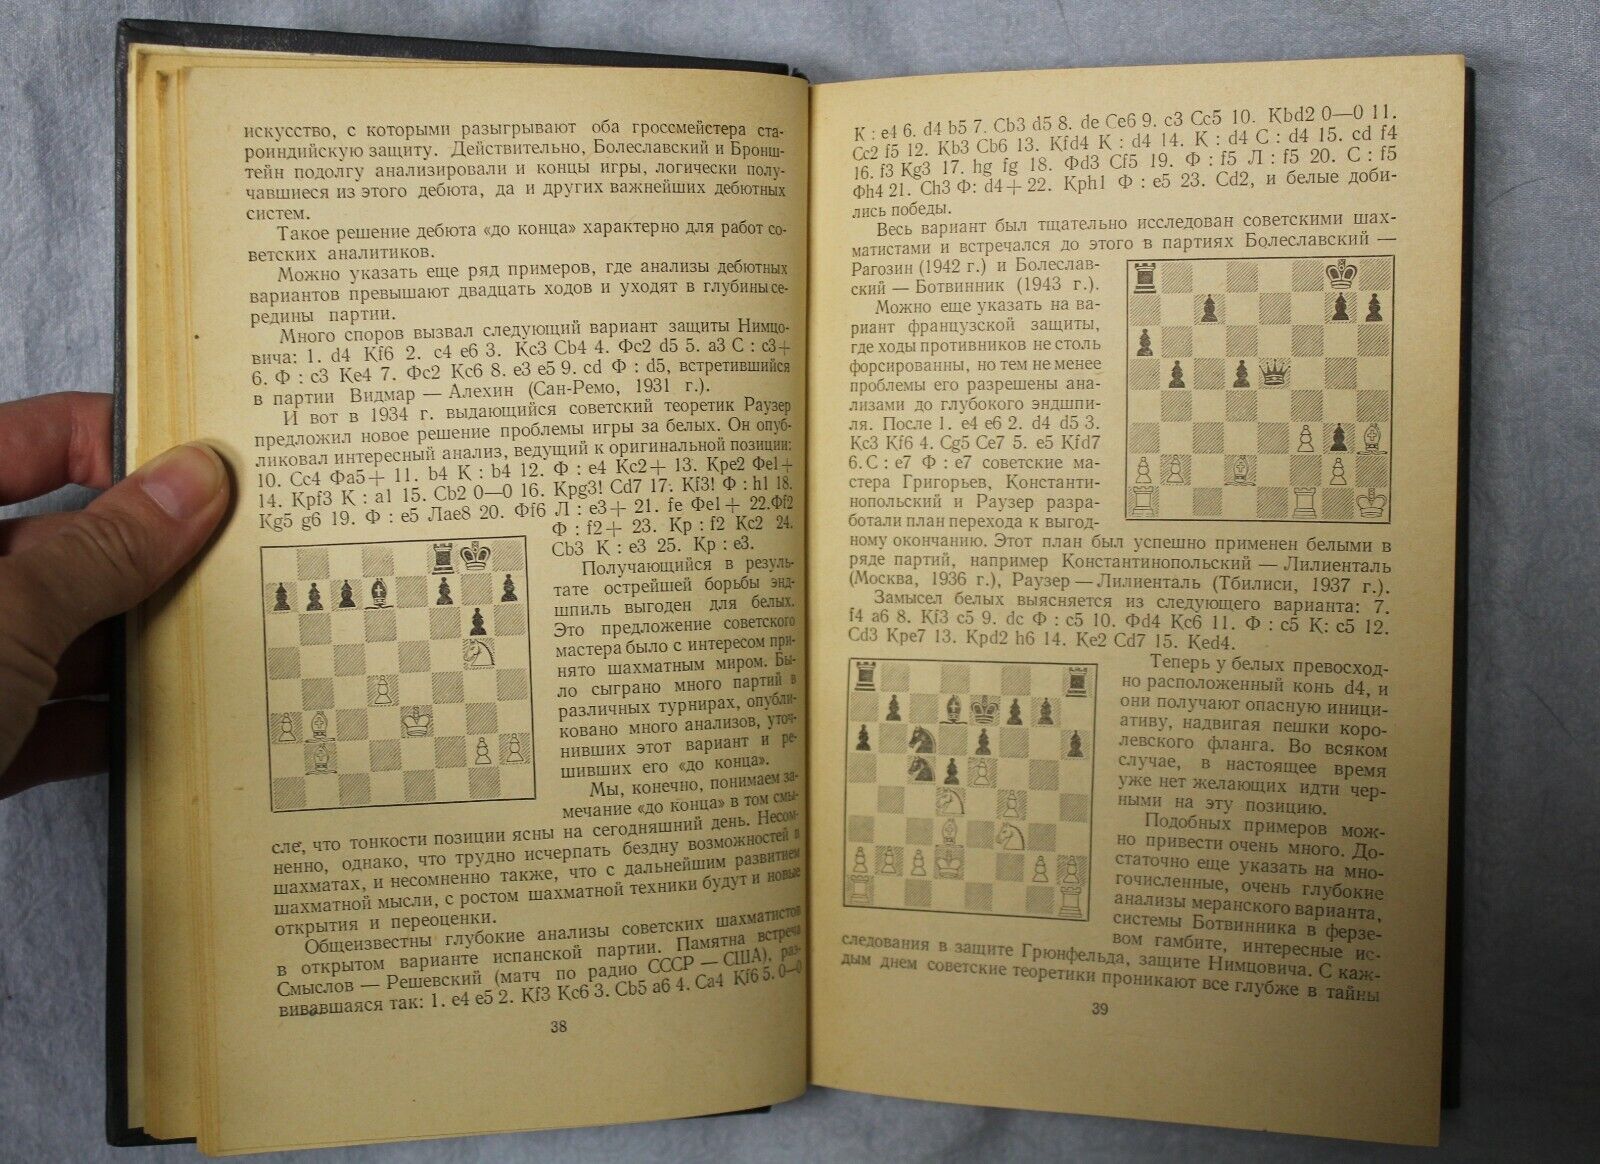 10971.Book: signed Roshal outstanding chess journalist, Soviet Chess School,1955 Kotov